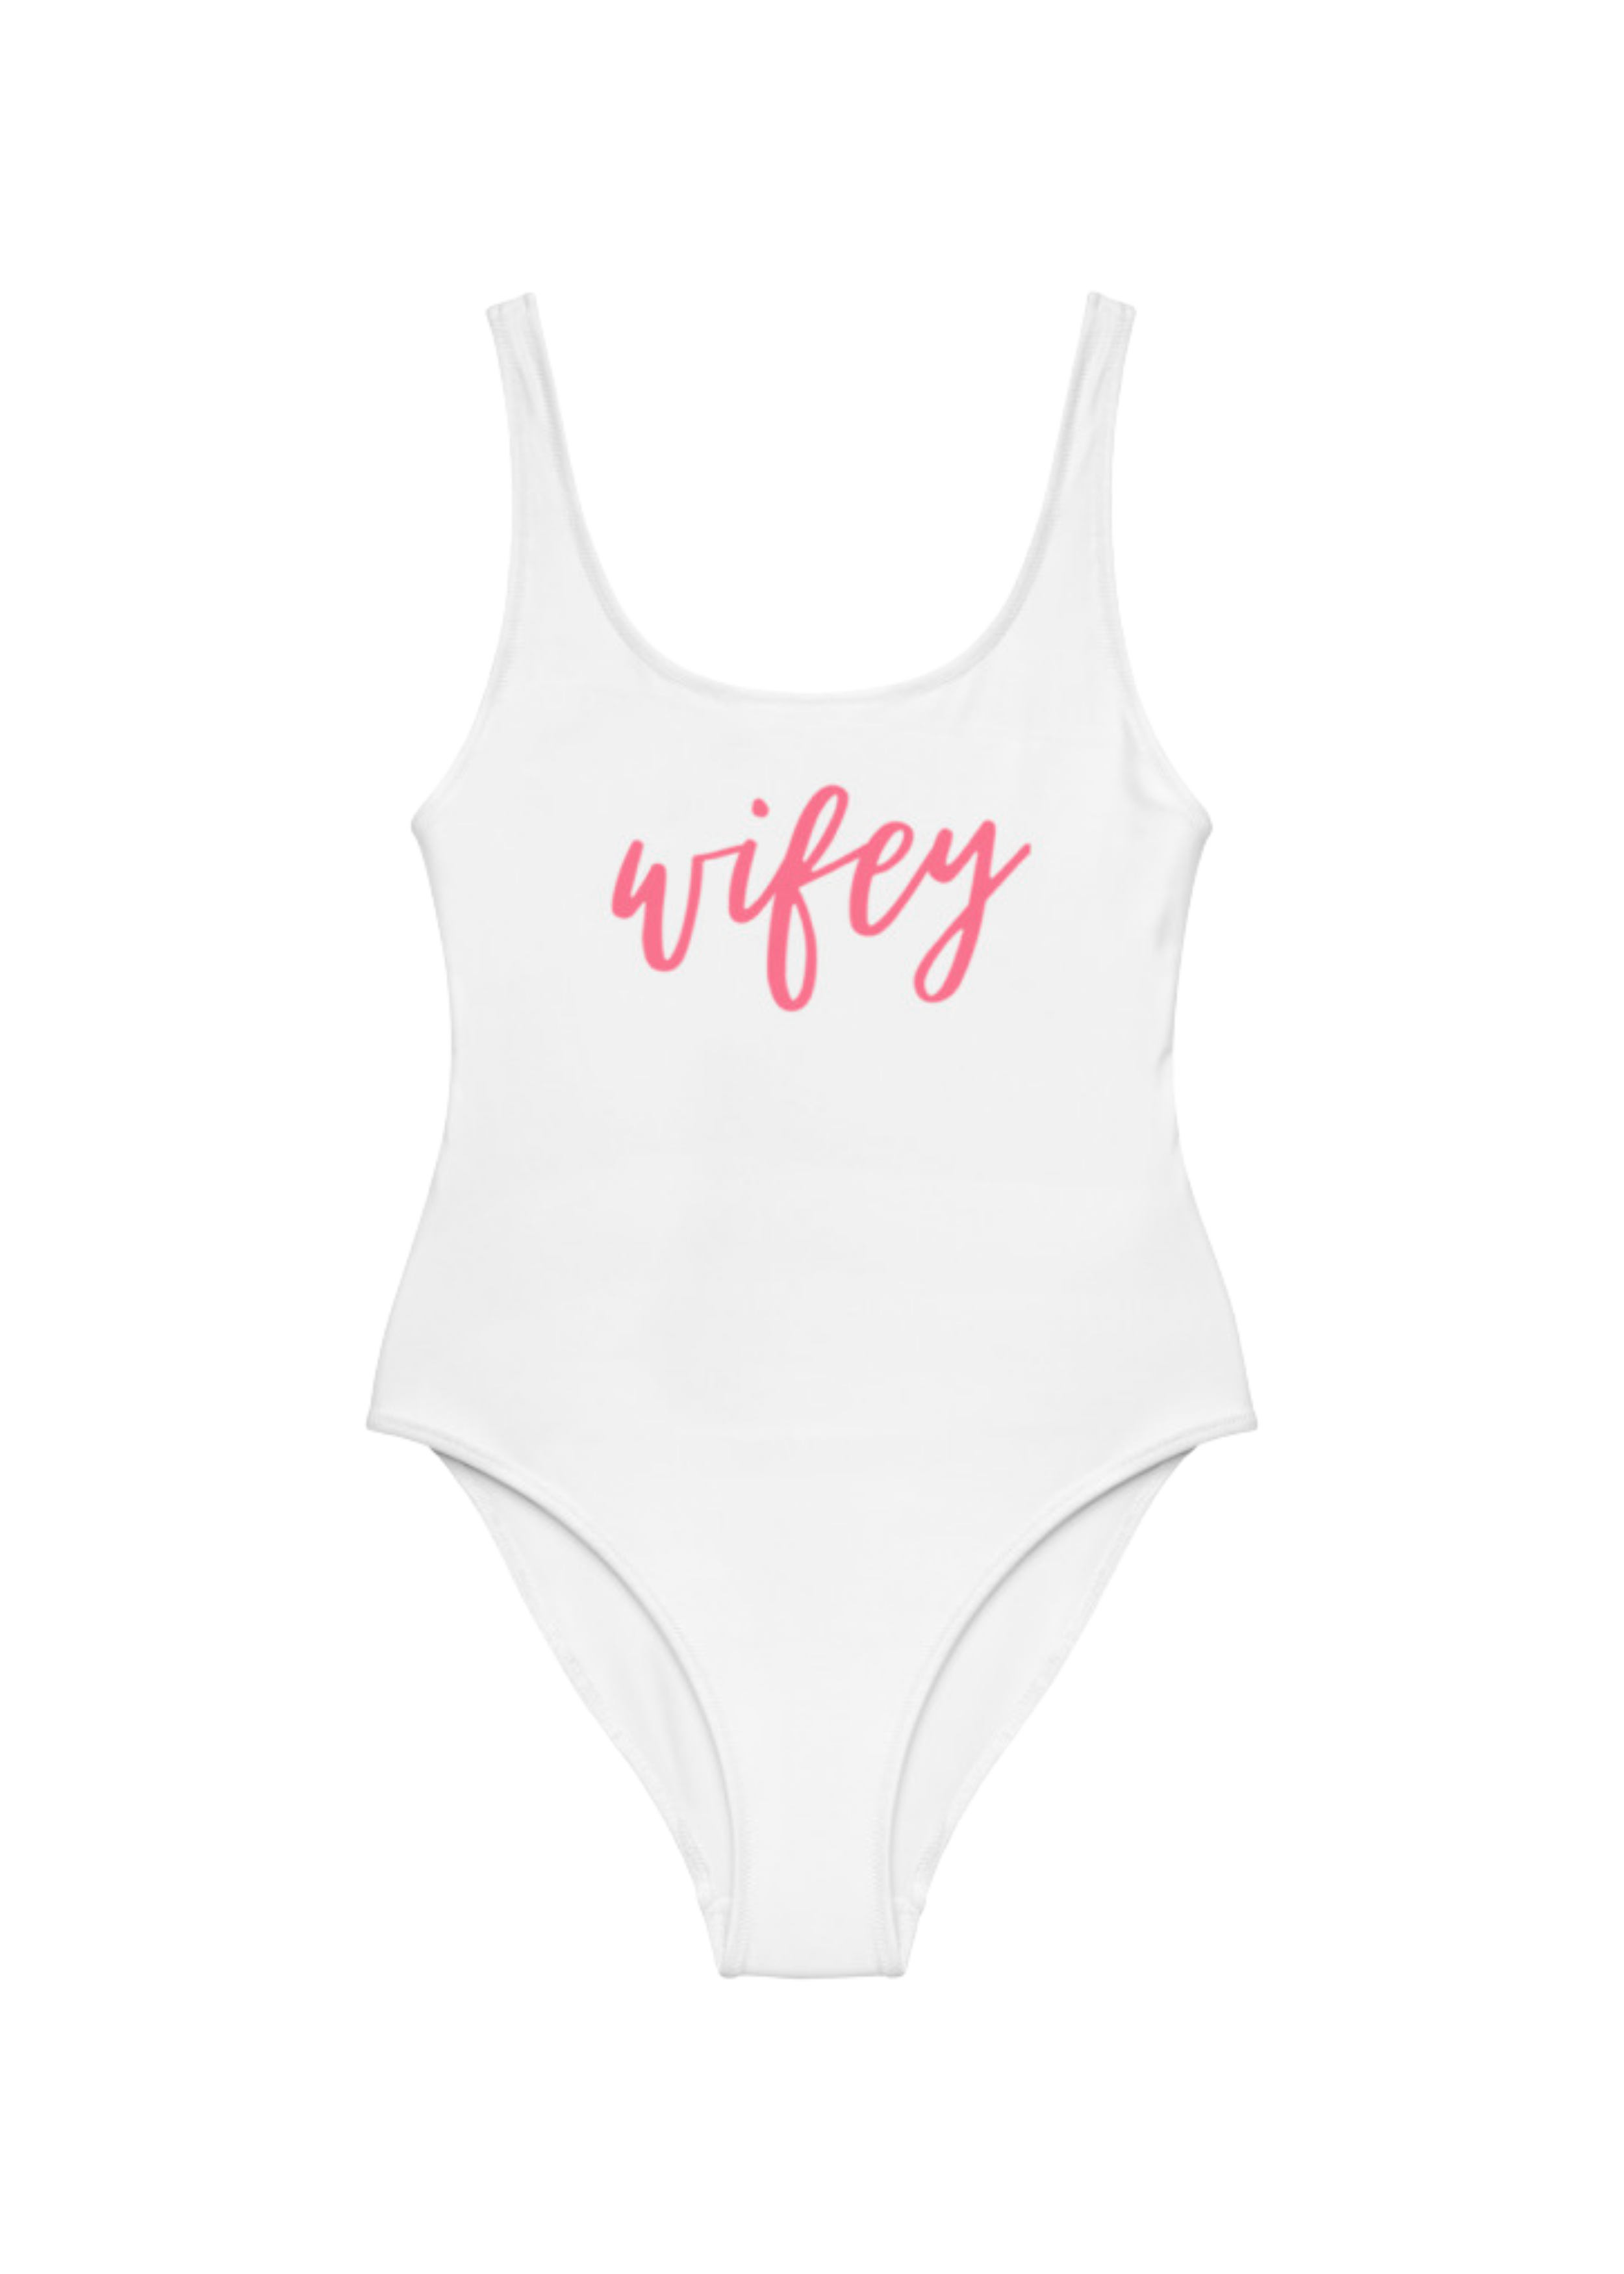 Wifey Swimsuit